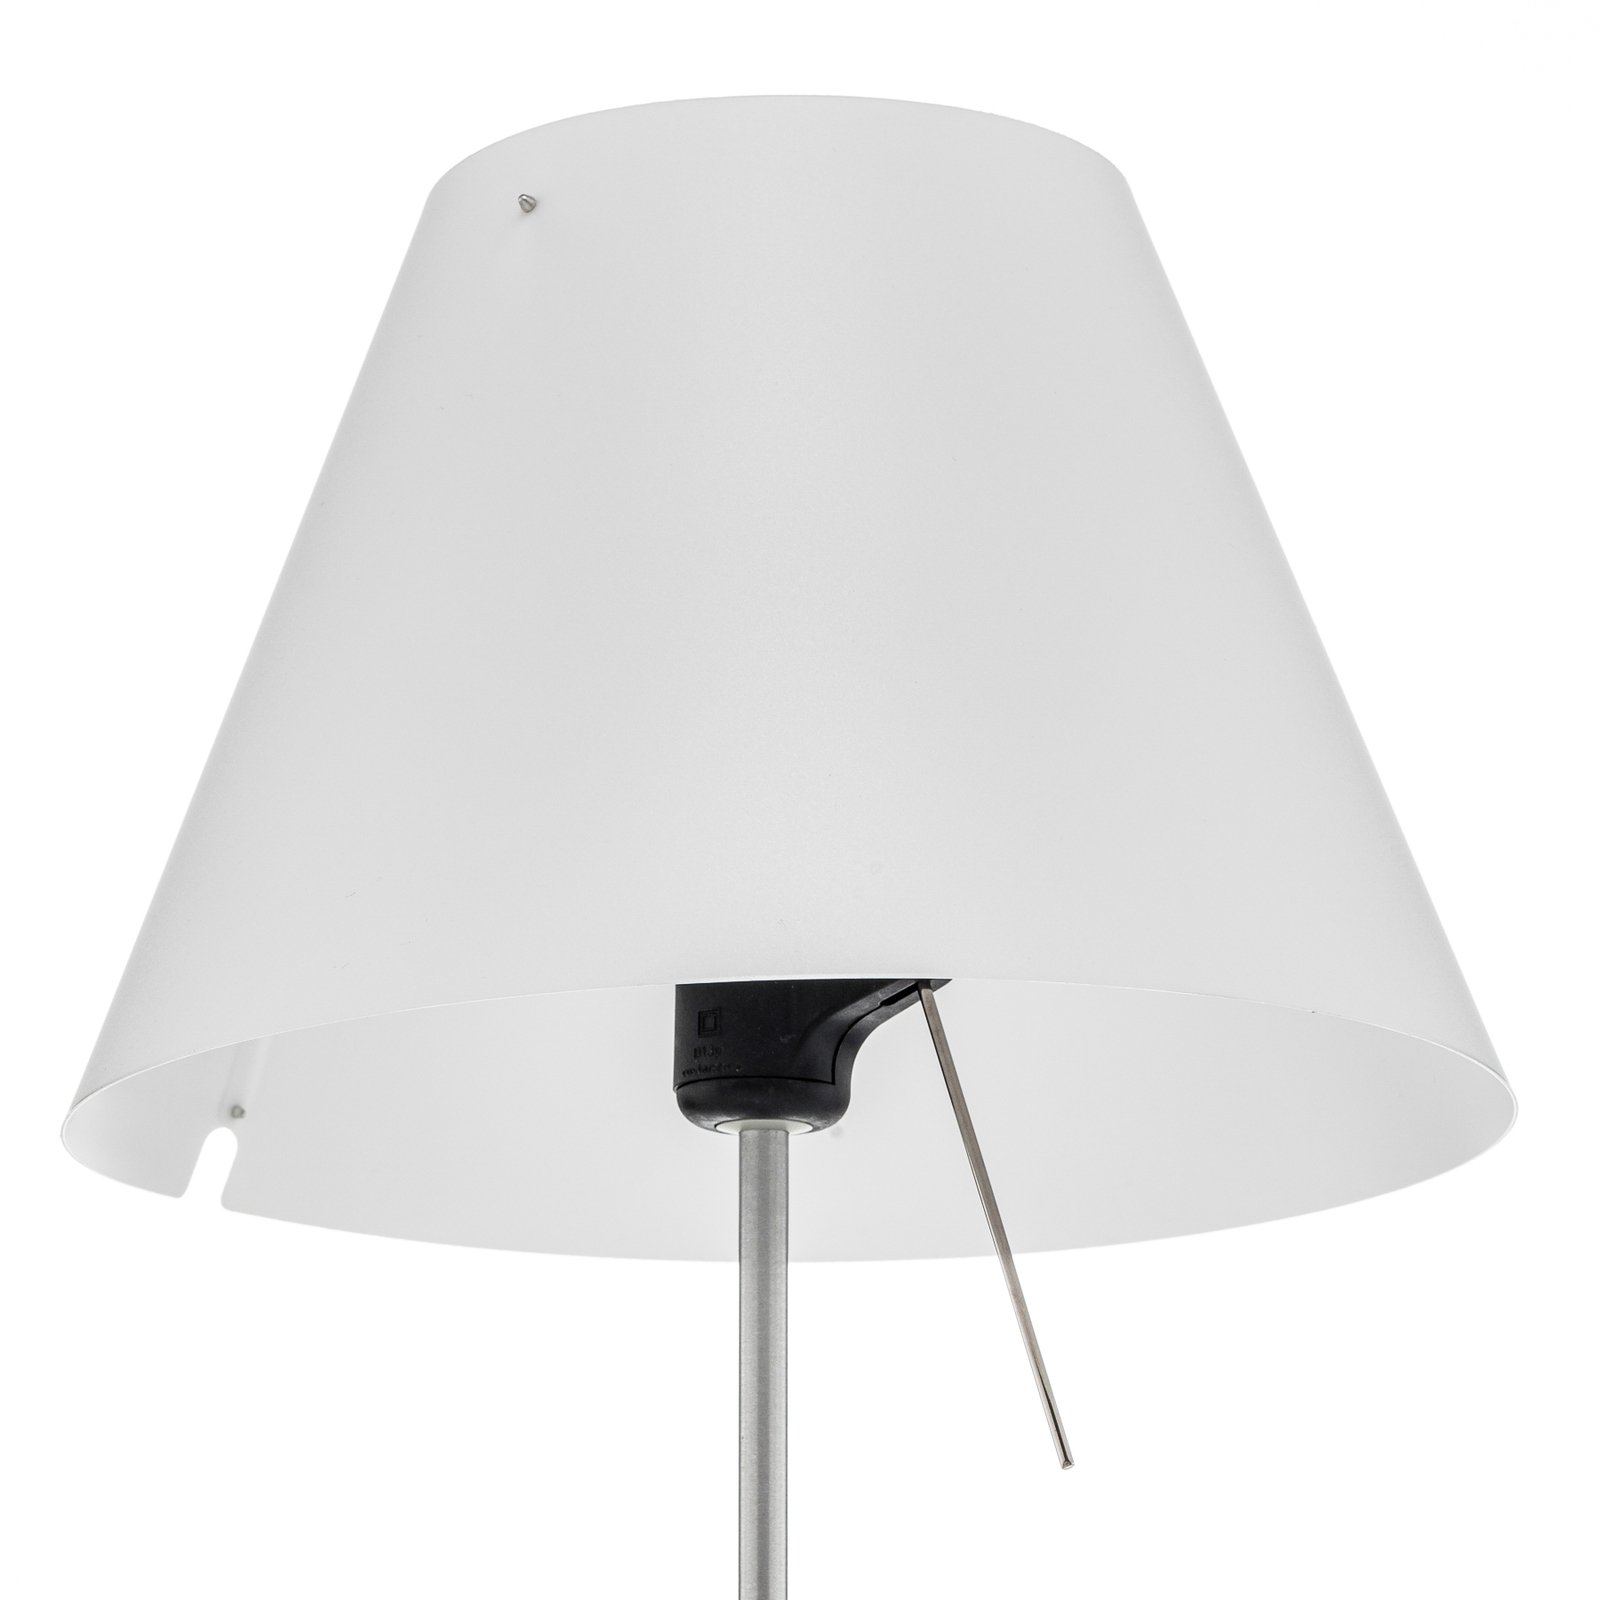 Luceplan Costanzina lampă de masă aluminiu, alb